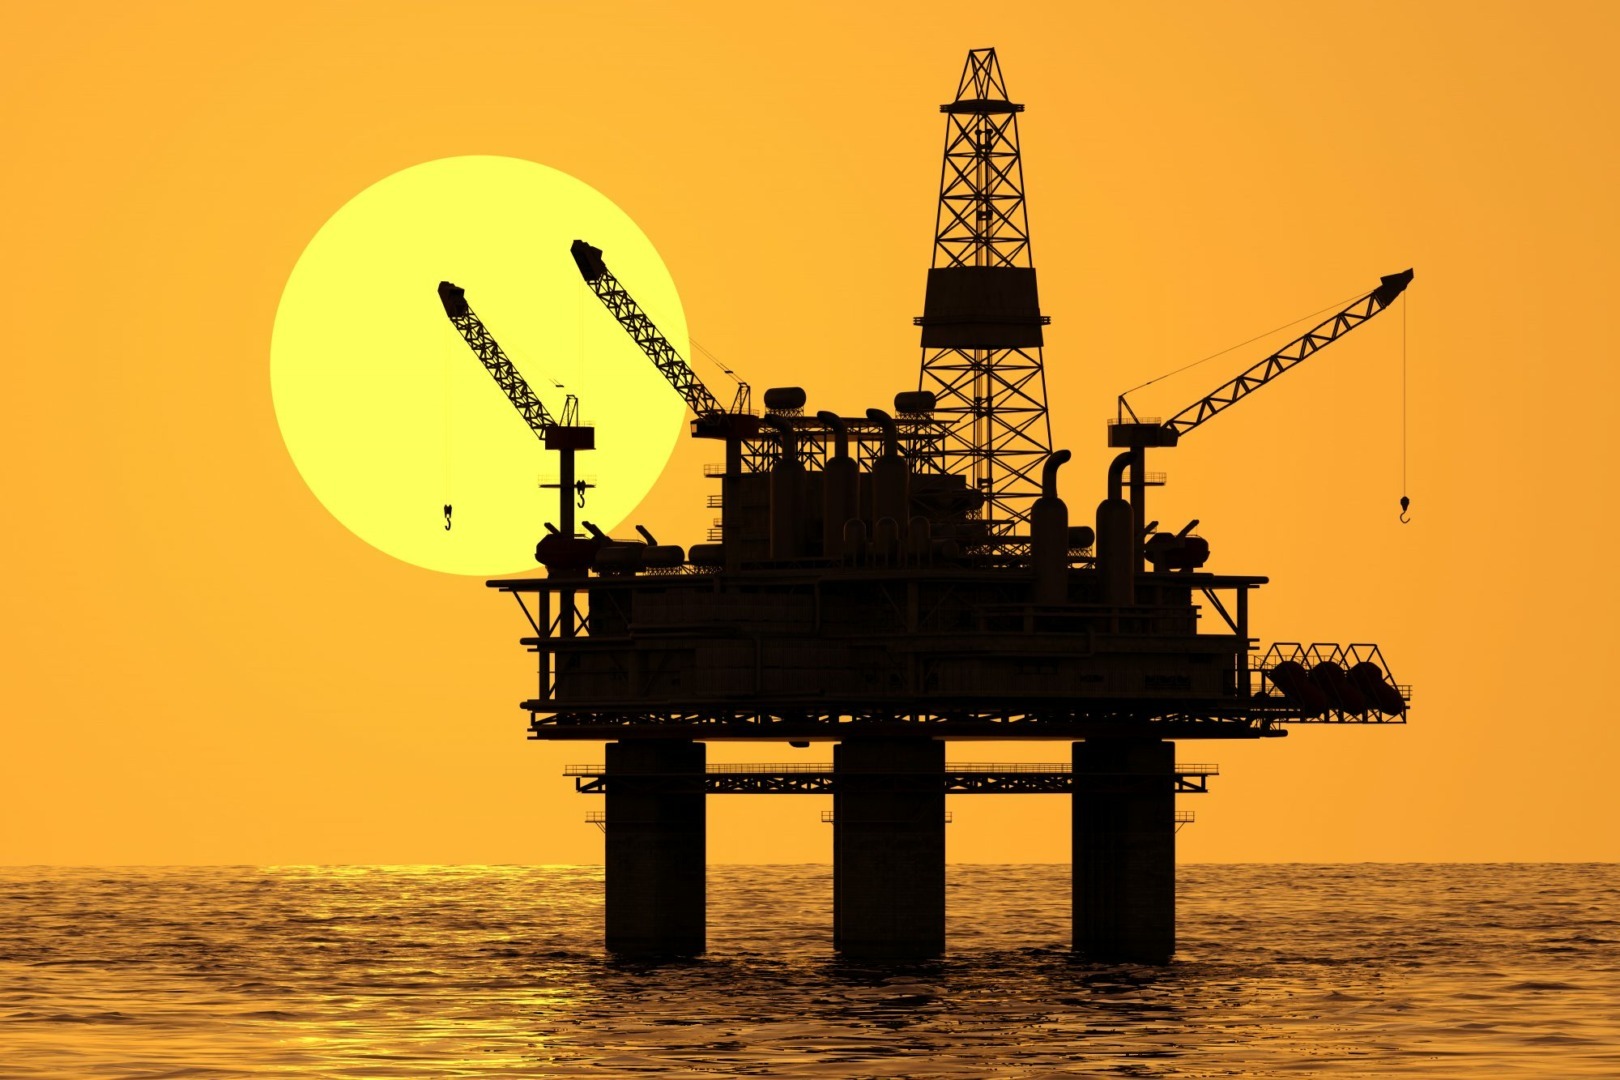 BLACK-SEA-OIL-AND-GAS-top-banner-e1554151908878